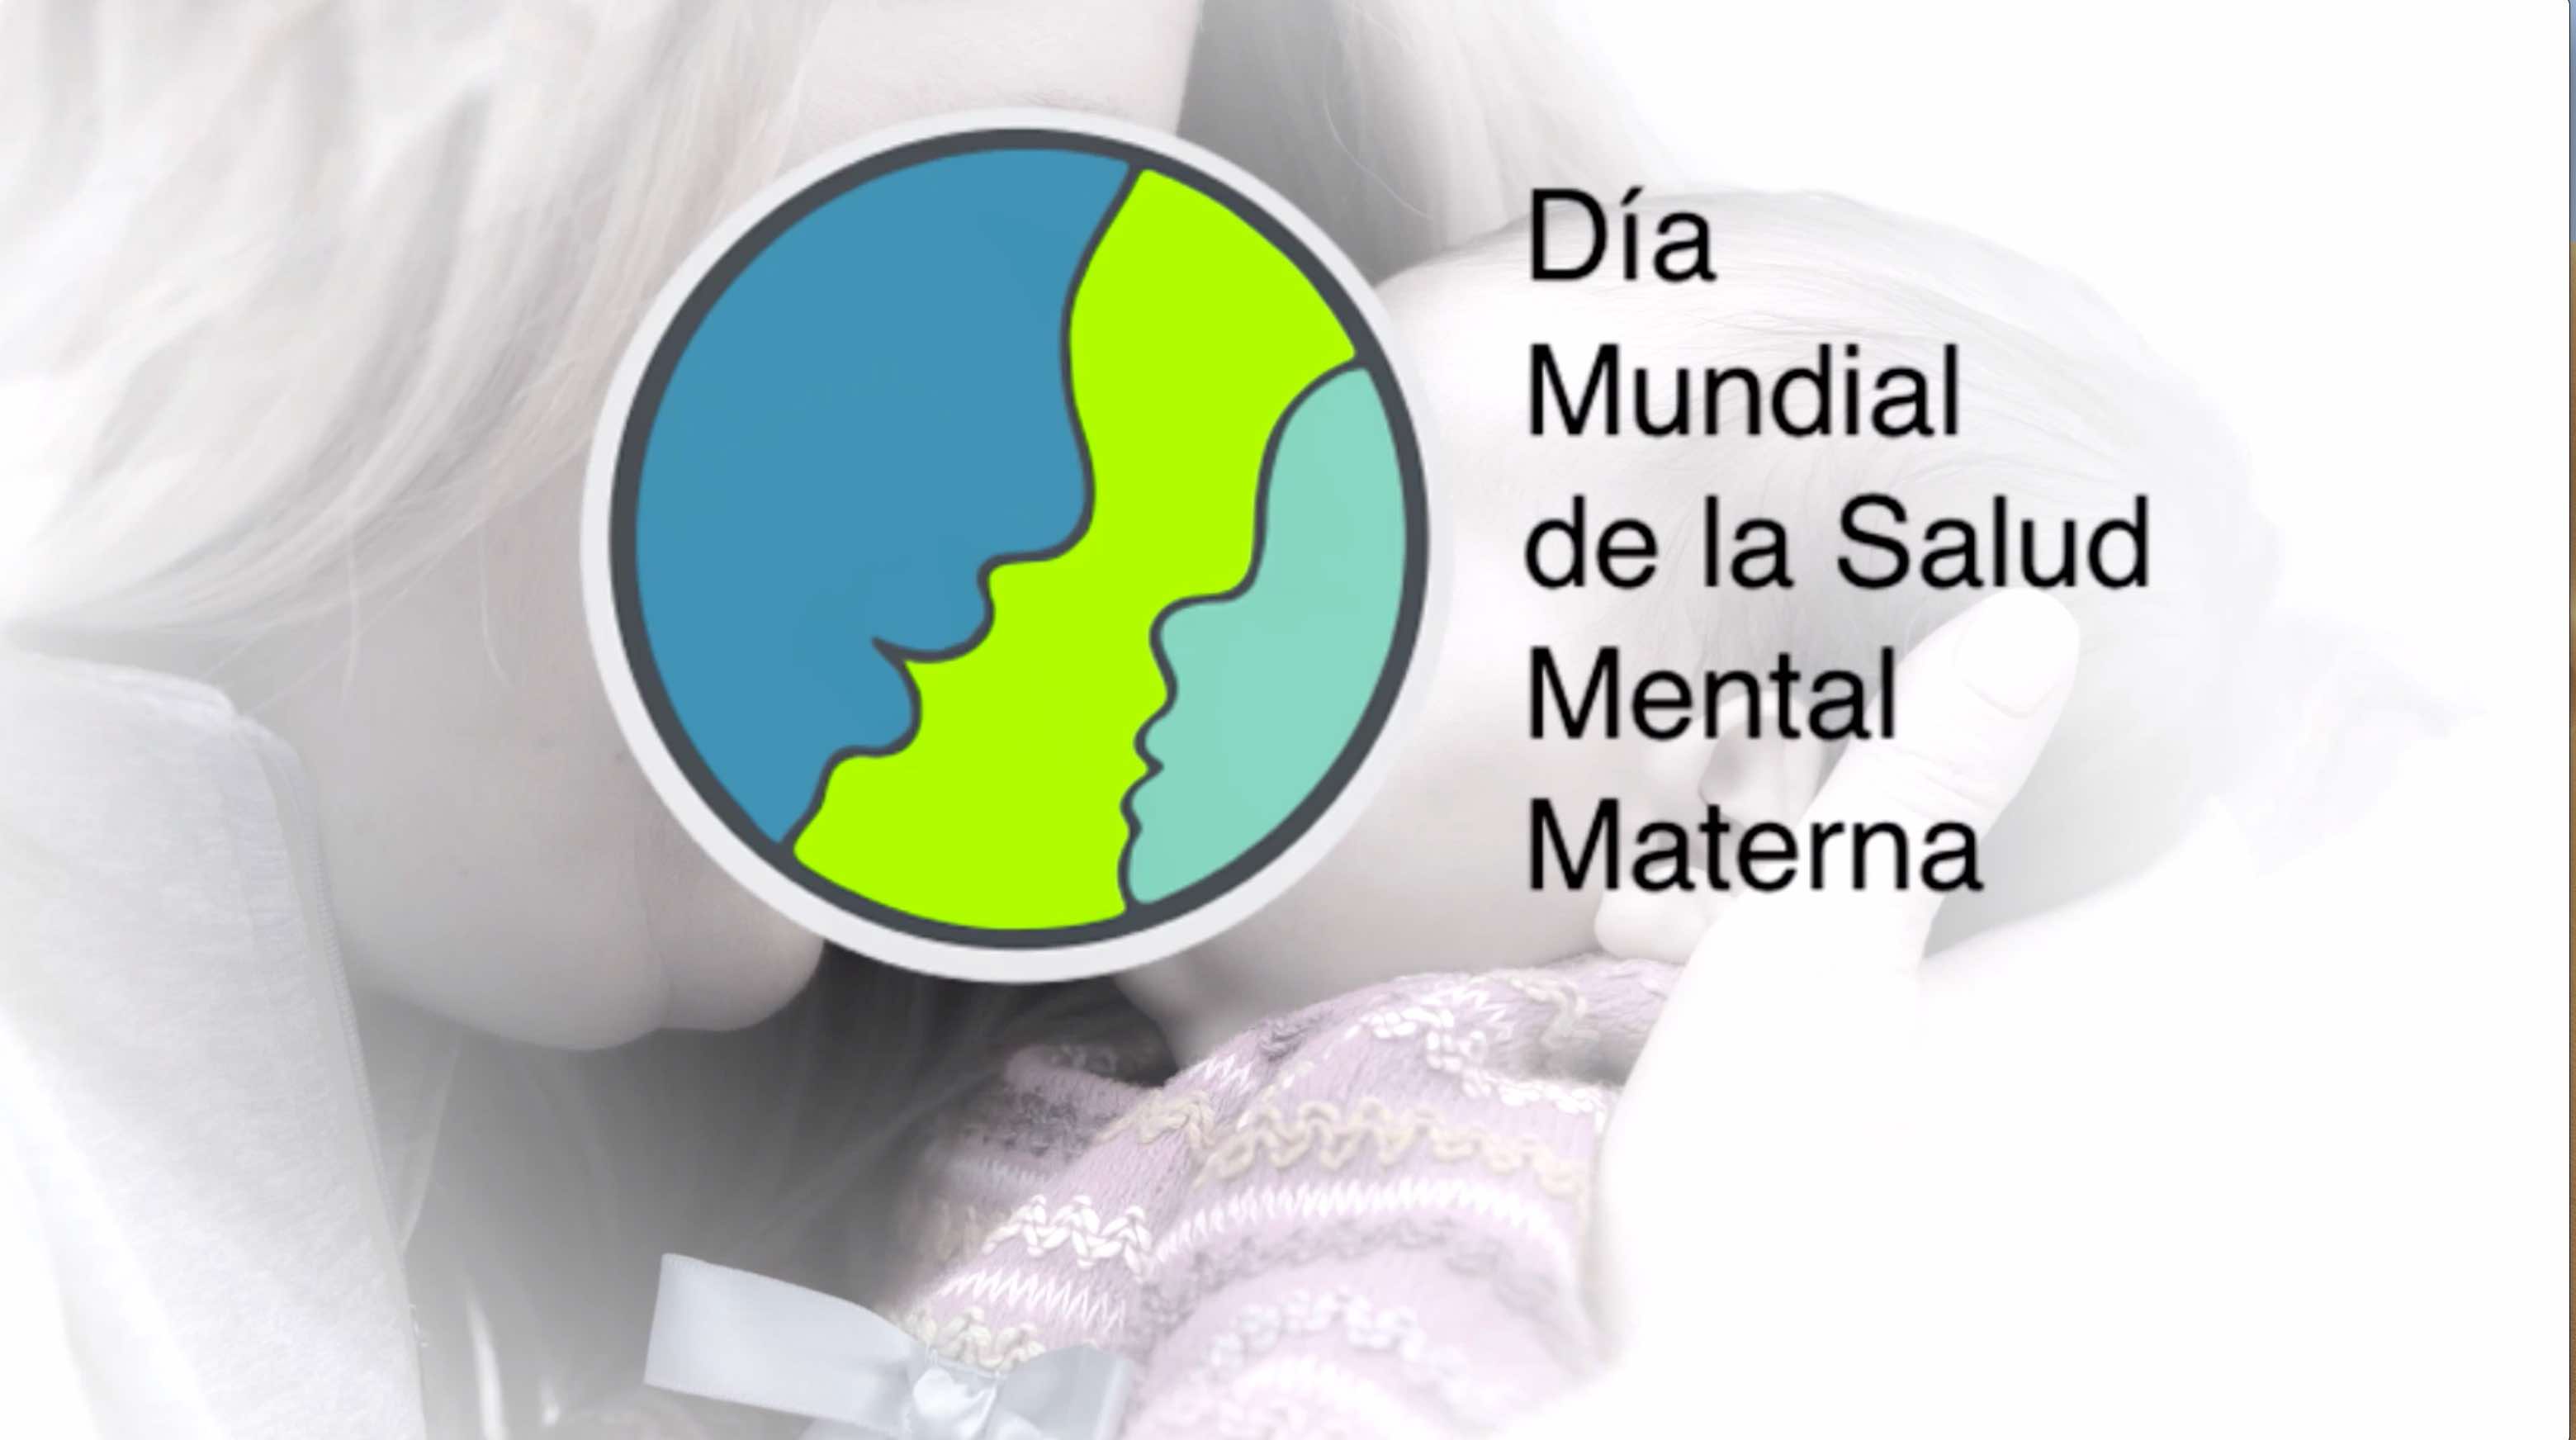  Vídeo per a difondre la Campanya del Dia Mundial de la Salut Mental Materna- Dexeus